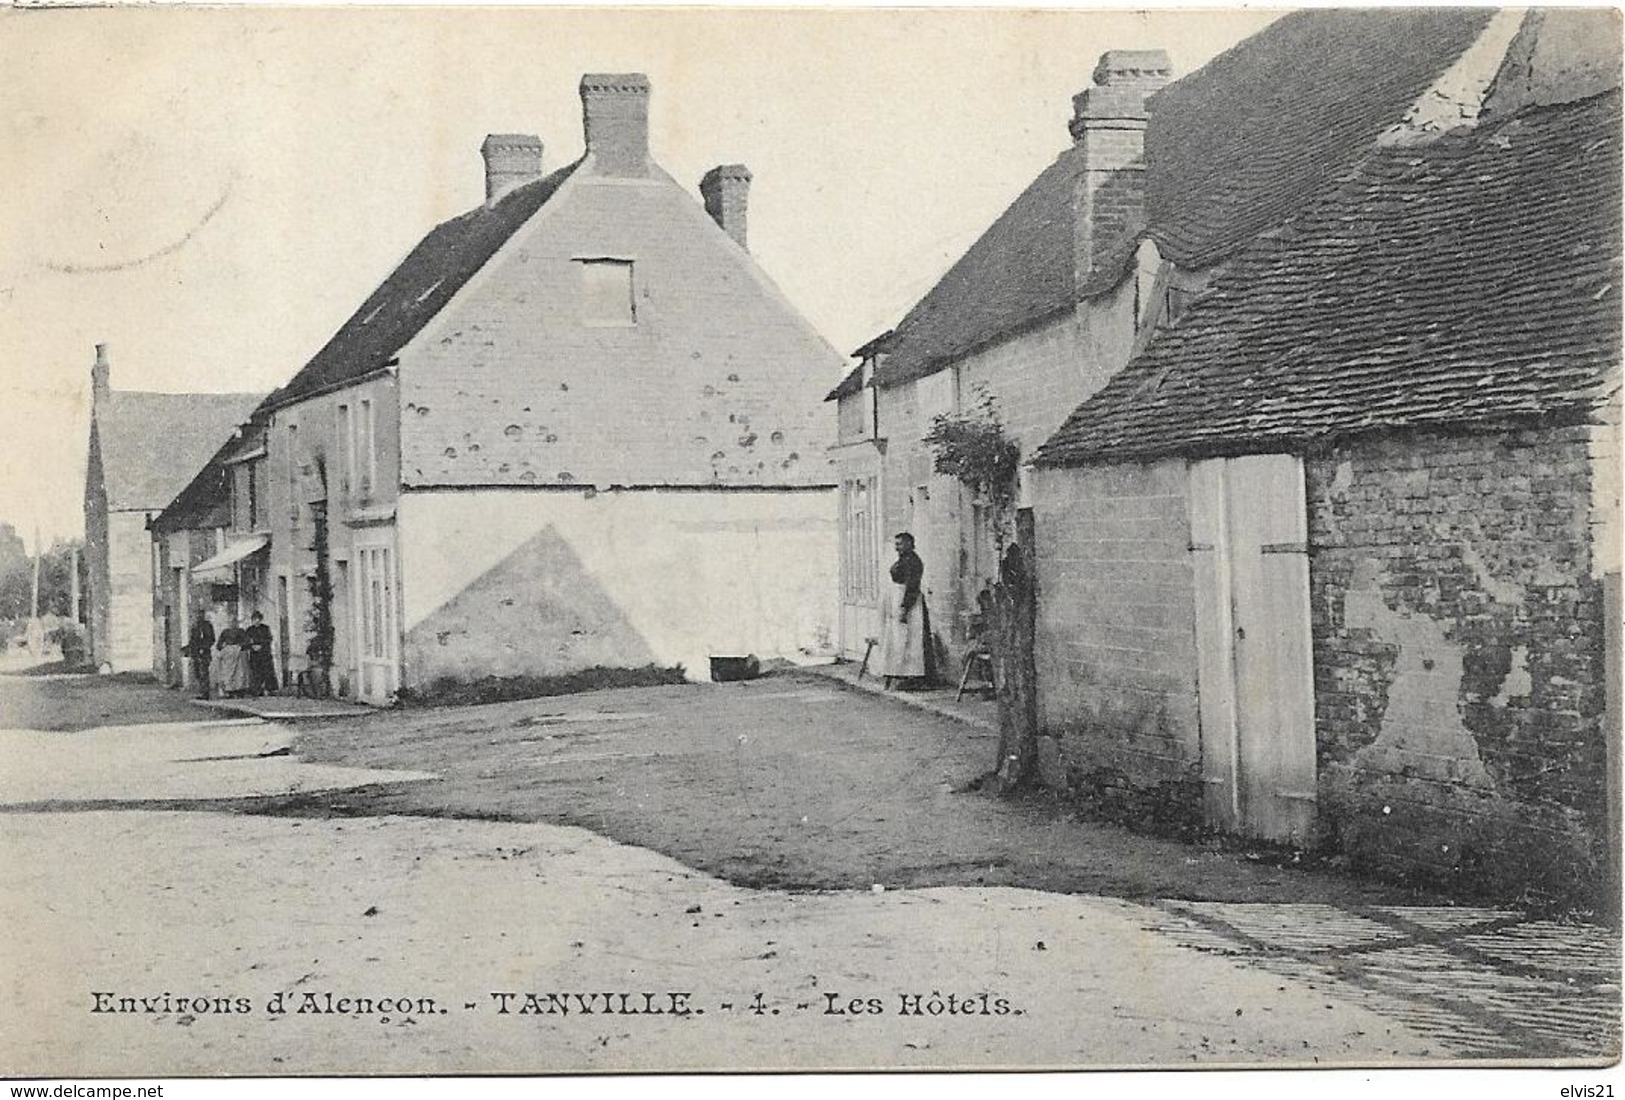 Tanville-hotel